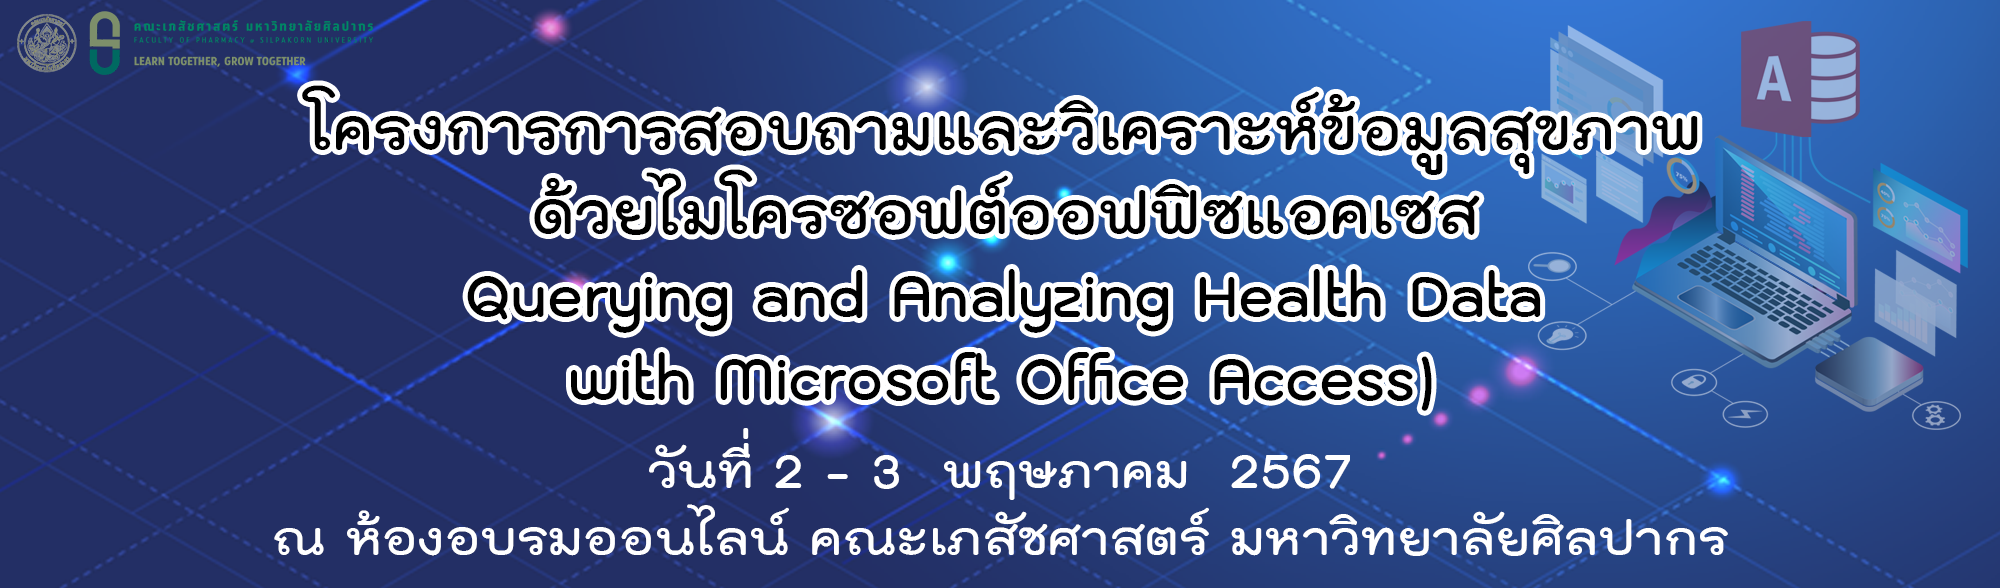 โครงการ การสอบถามและวิเคราะห์ข้อมูลสุขภาพด้วยไมโครซอฟต์ออฟฟิซแอคเซส (Querying and Analyzing Health Data with Microsoft Office Access) Online meeting